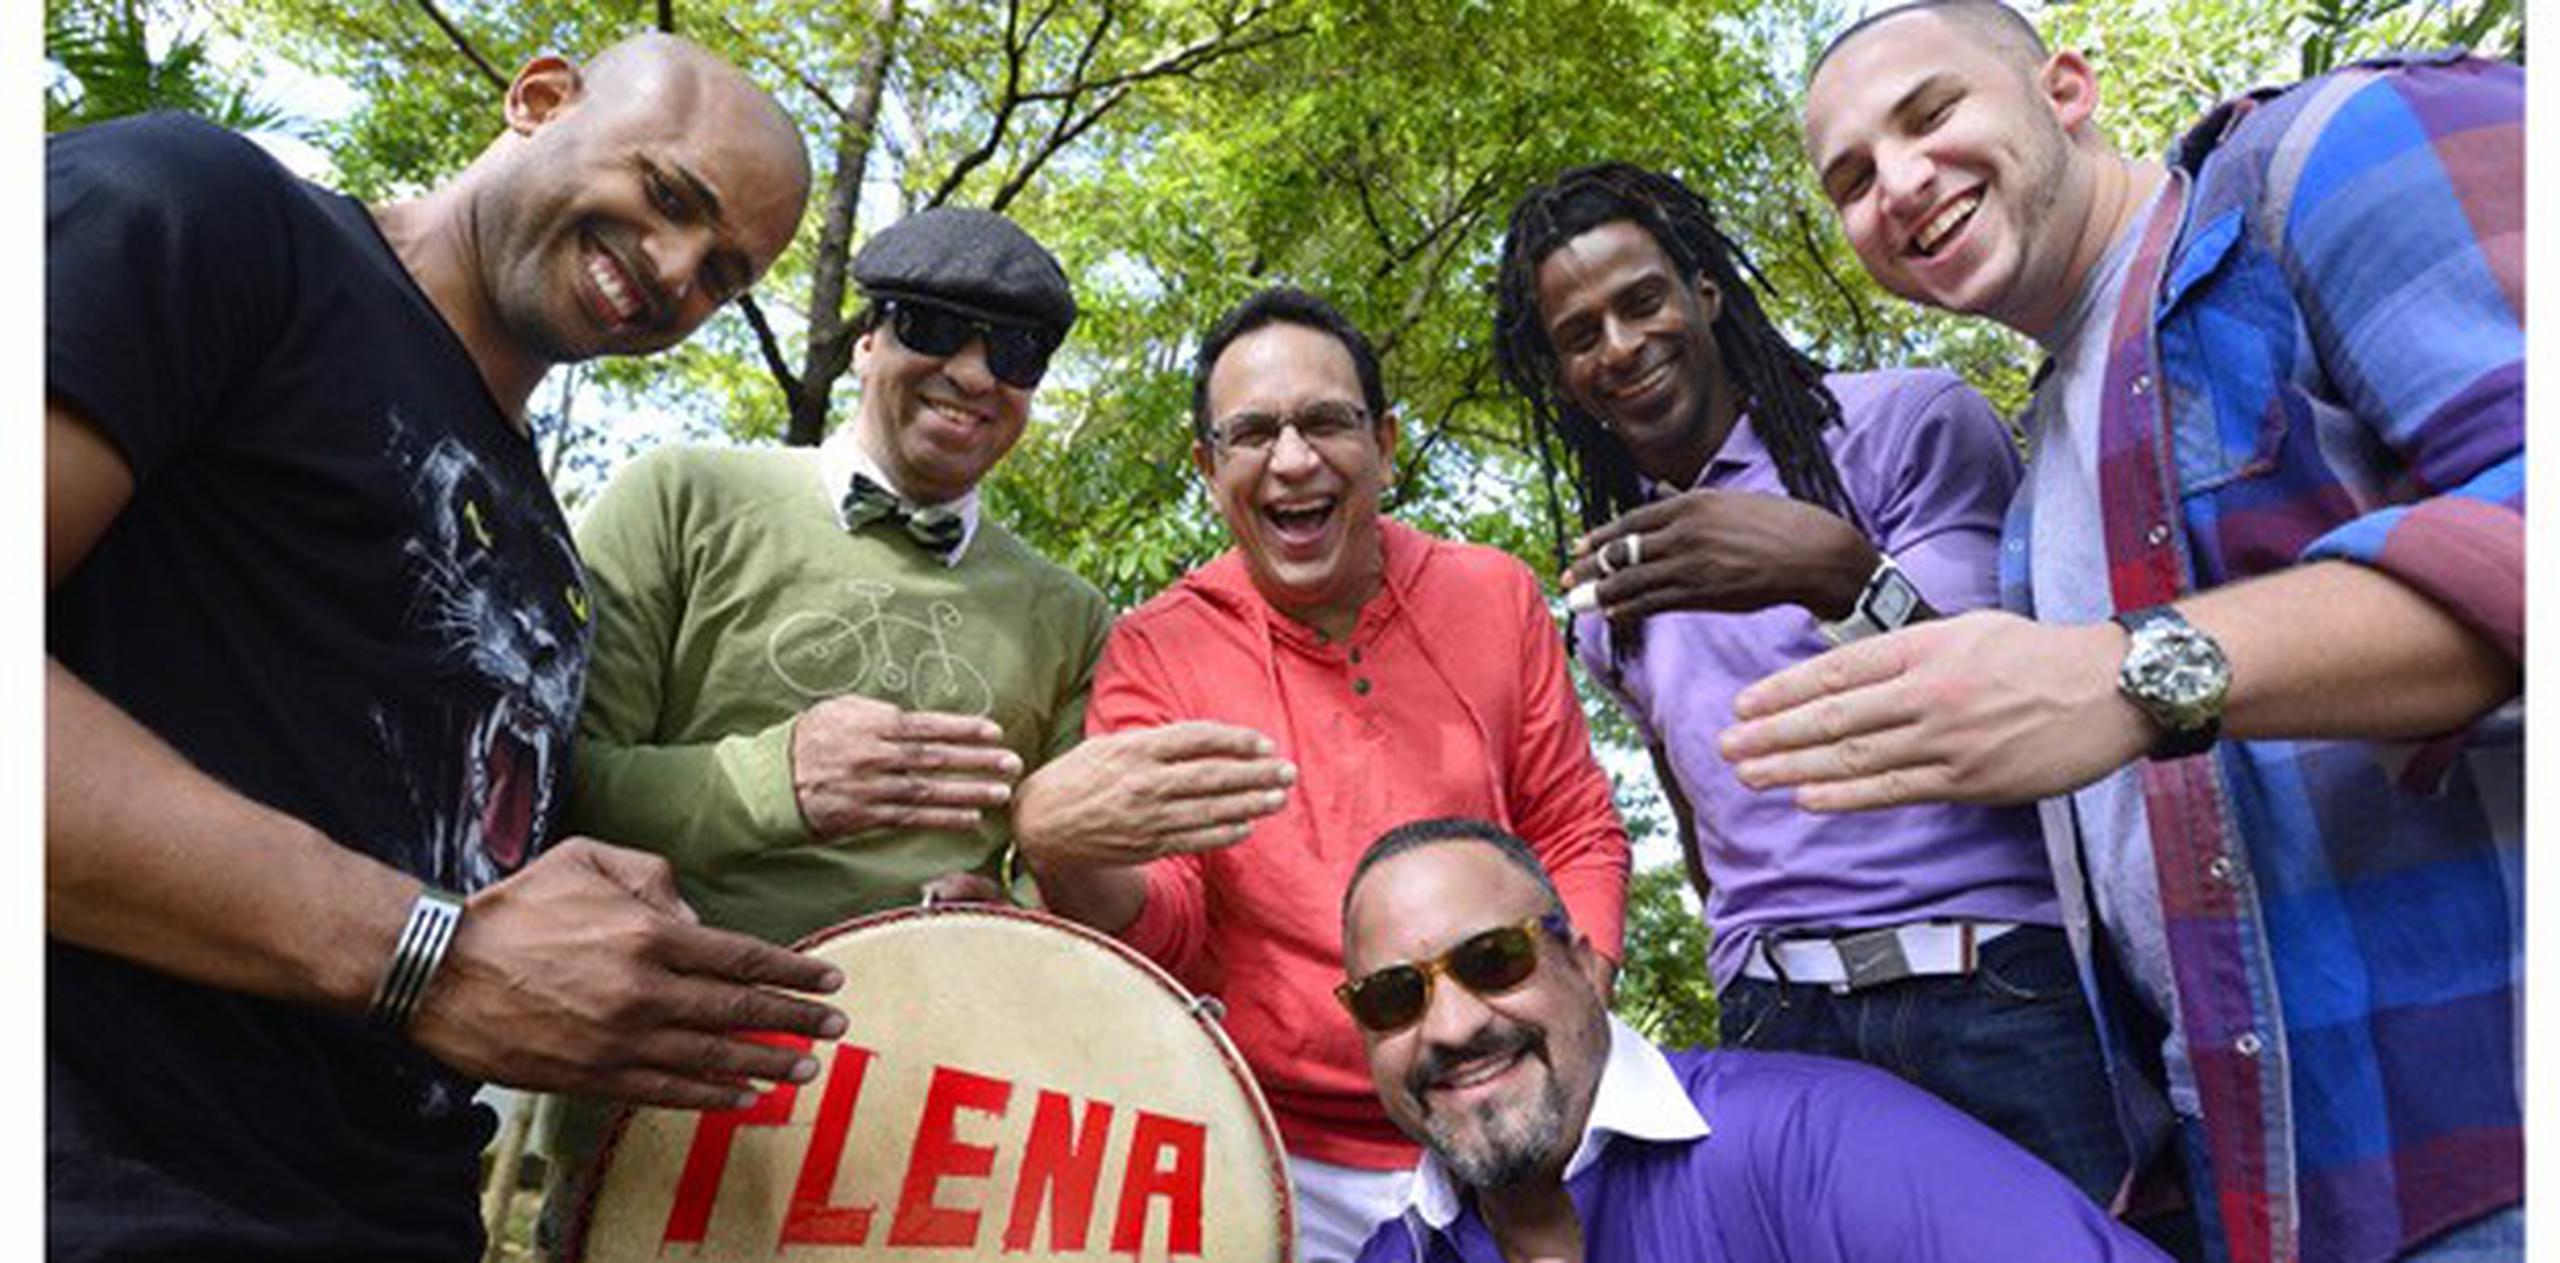 Plena Libre será una de las ofertas musicales del New Year’s Evolution, a celebrarse en el Centro de Convenciones de Puerto Rico. (Archivo)